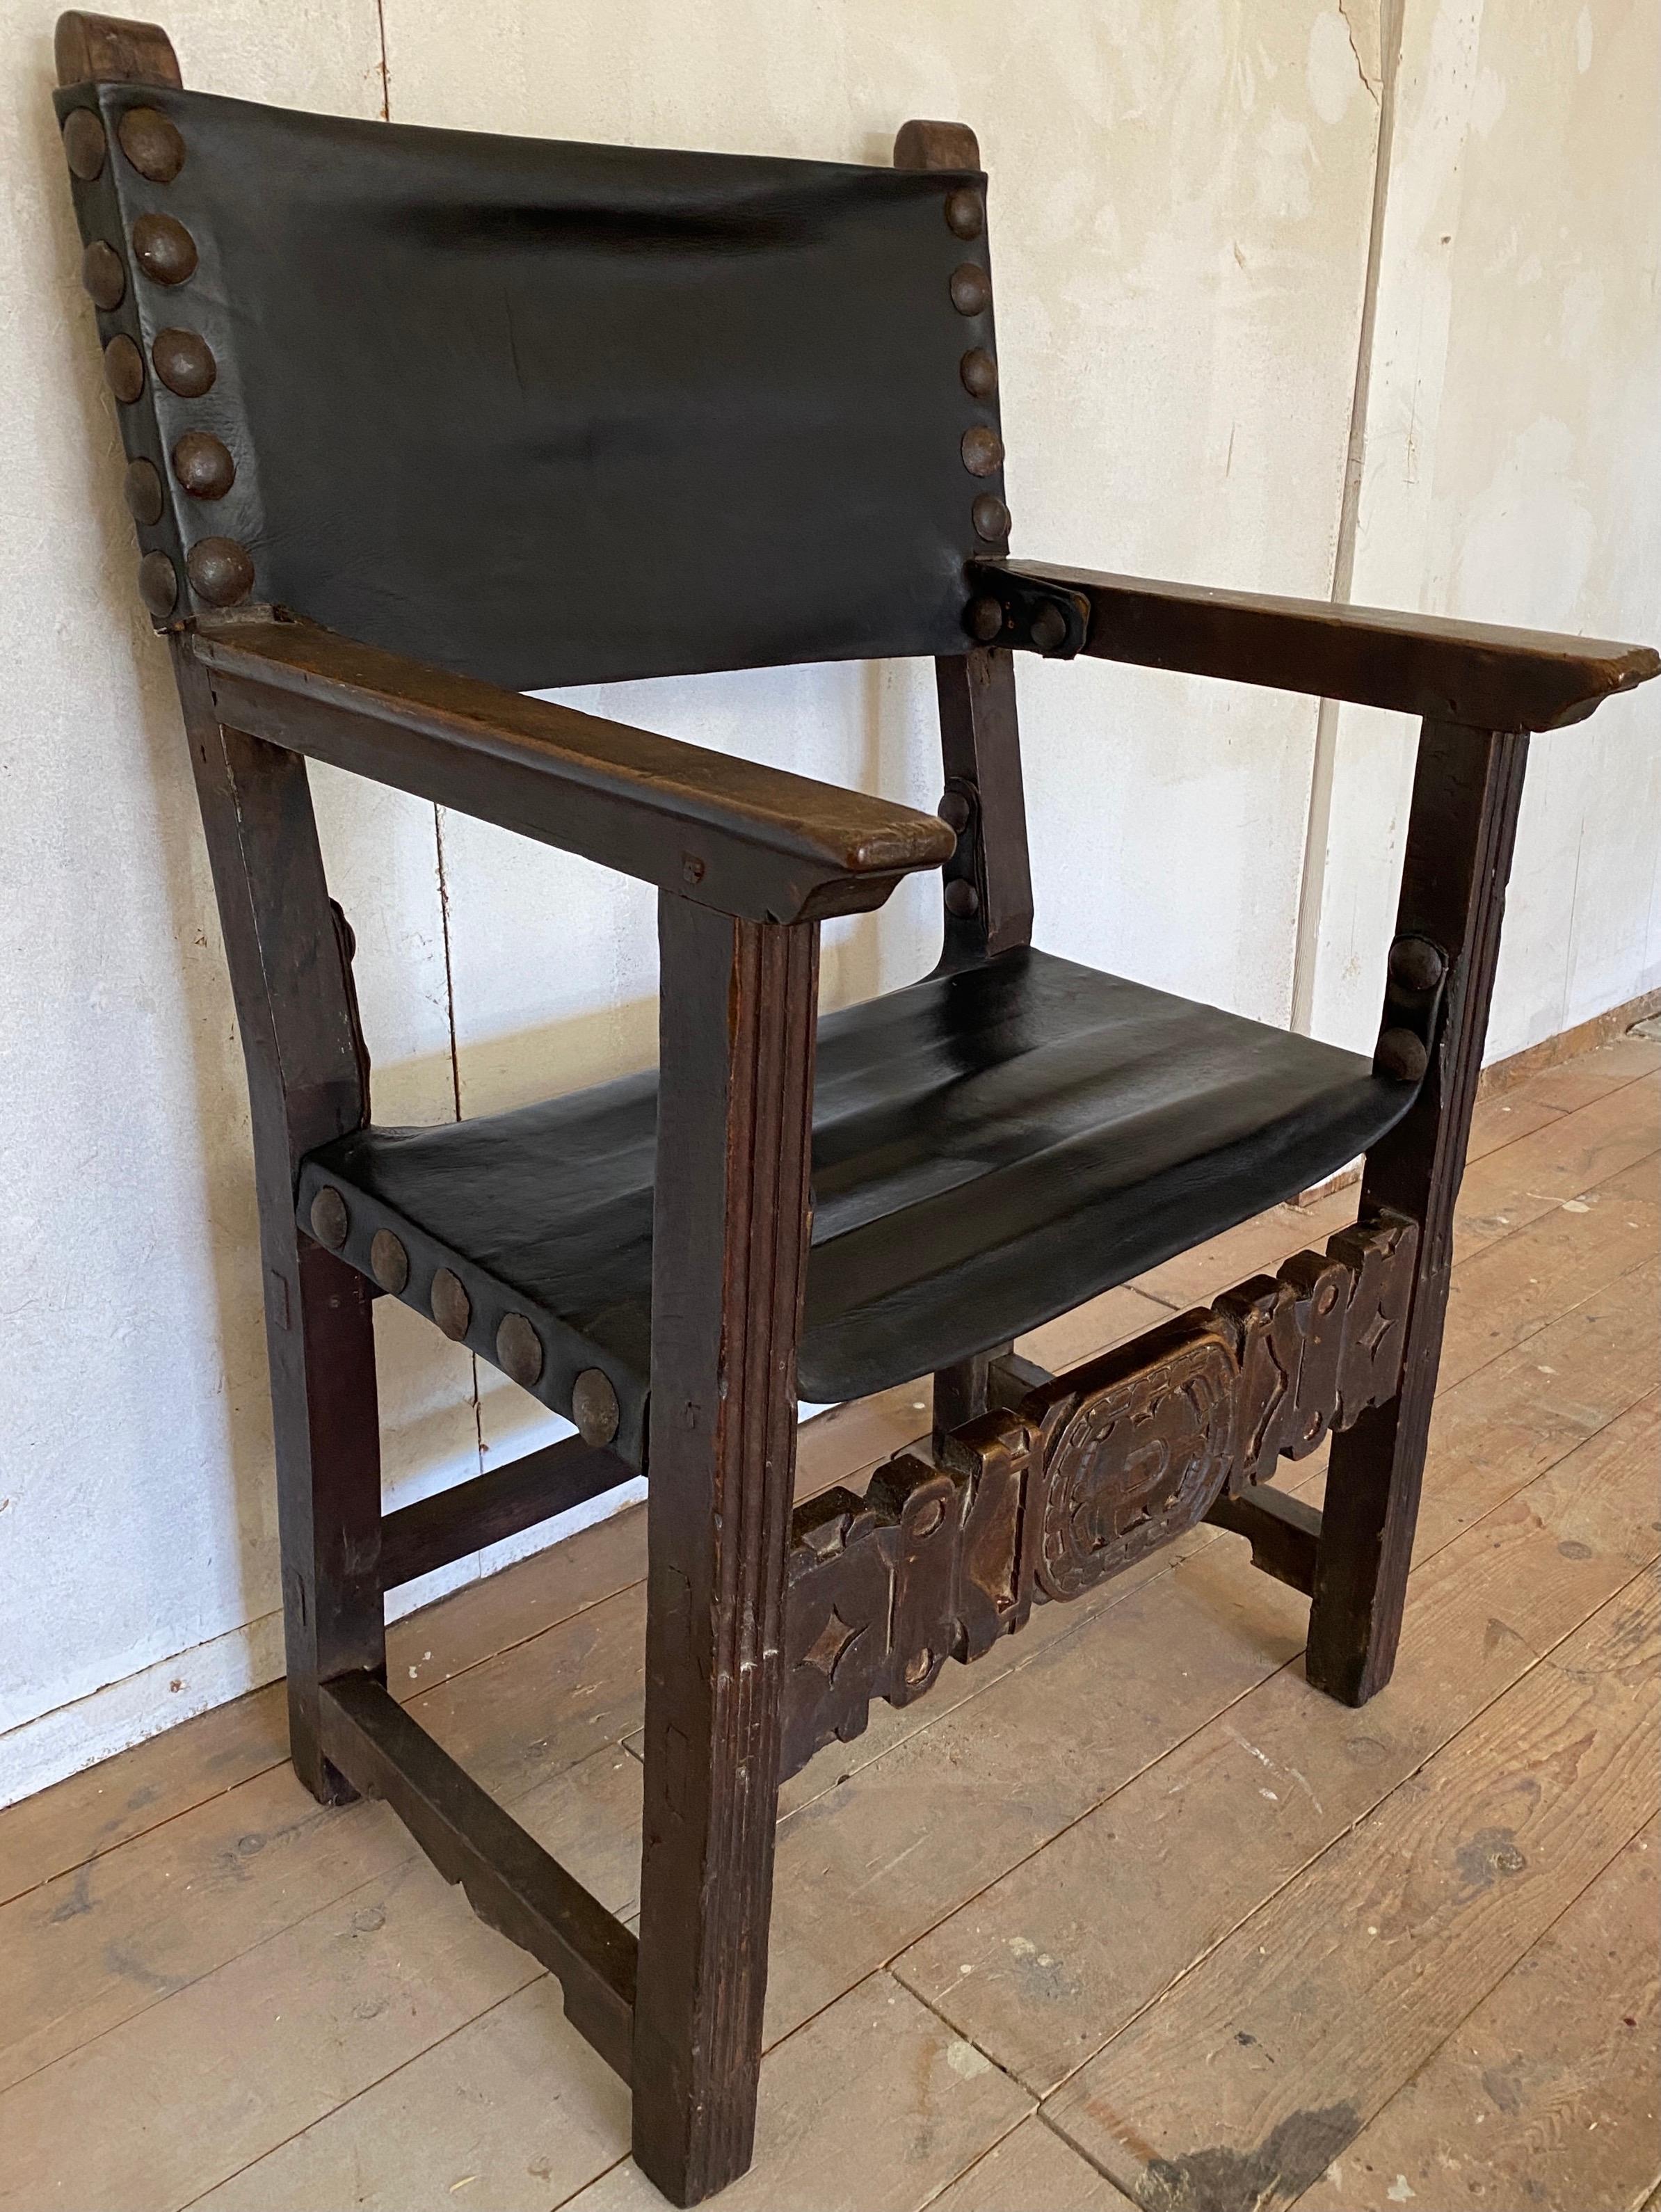 Dieser spanische Thronsessel aus Nussbaum mit einer großen, breiten Sitzfläche wurde um 1700 hergestellt. Der Stuhl ist aus gut geschnitztem, aber einfachem Nussbaumholz gefertigt und verfügt über eine lederbezogene Sitzfläche und Rückenlehne mit